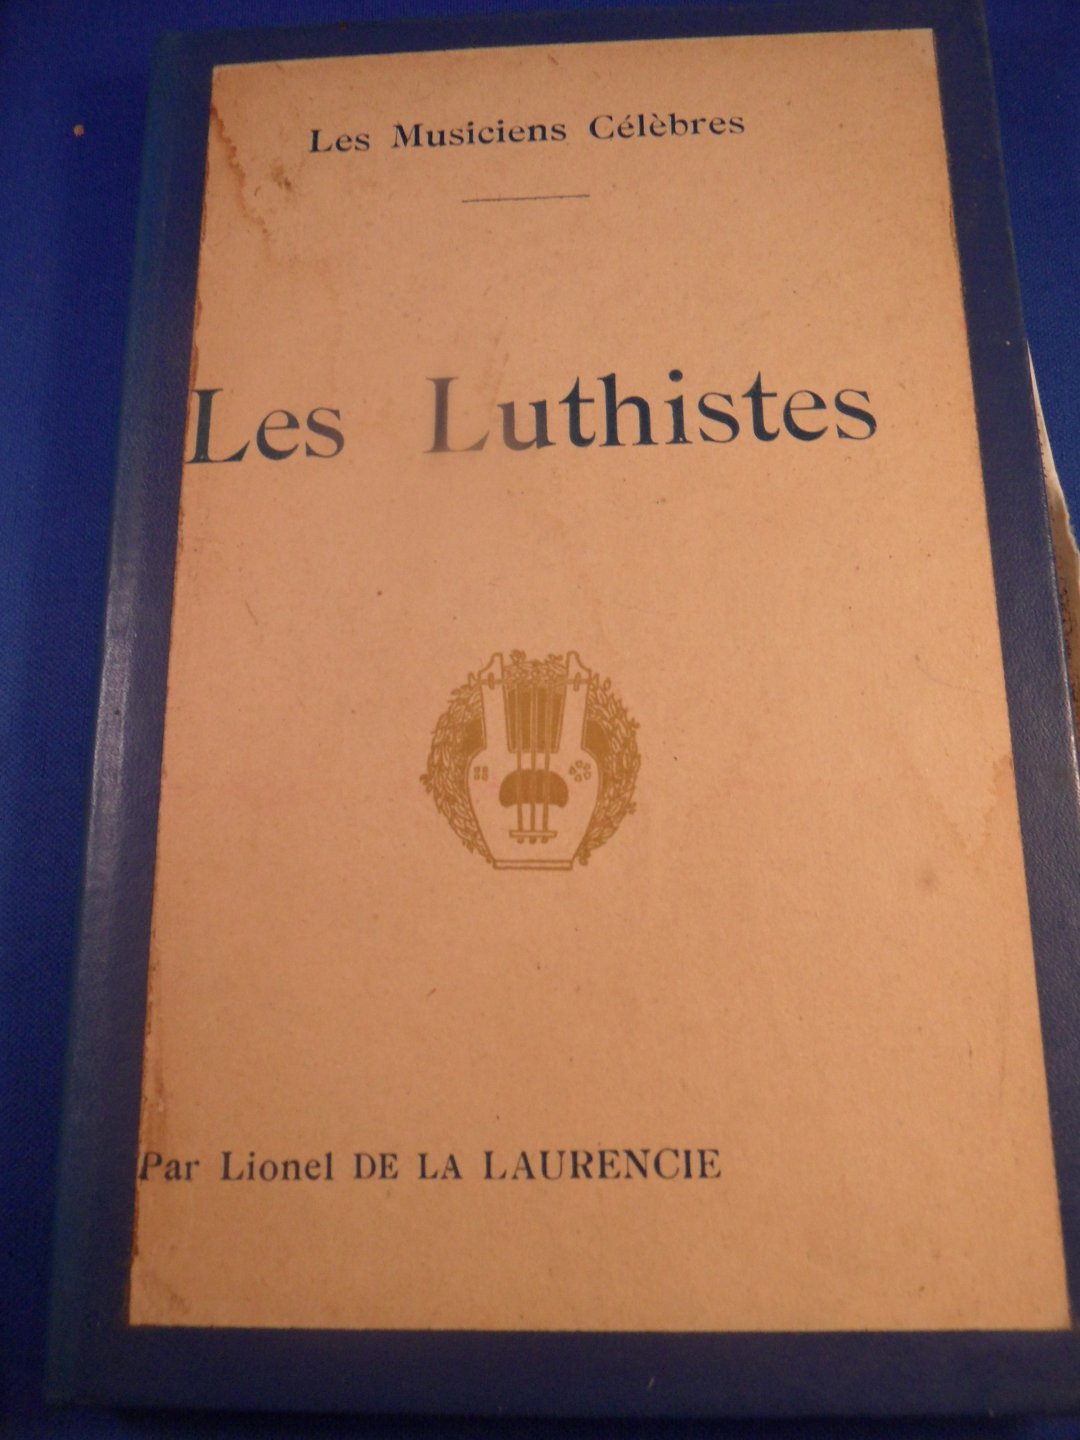 Laurencie, Lionel de la - Les Luthistes, les musiciens célèbres